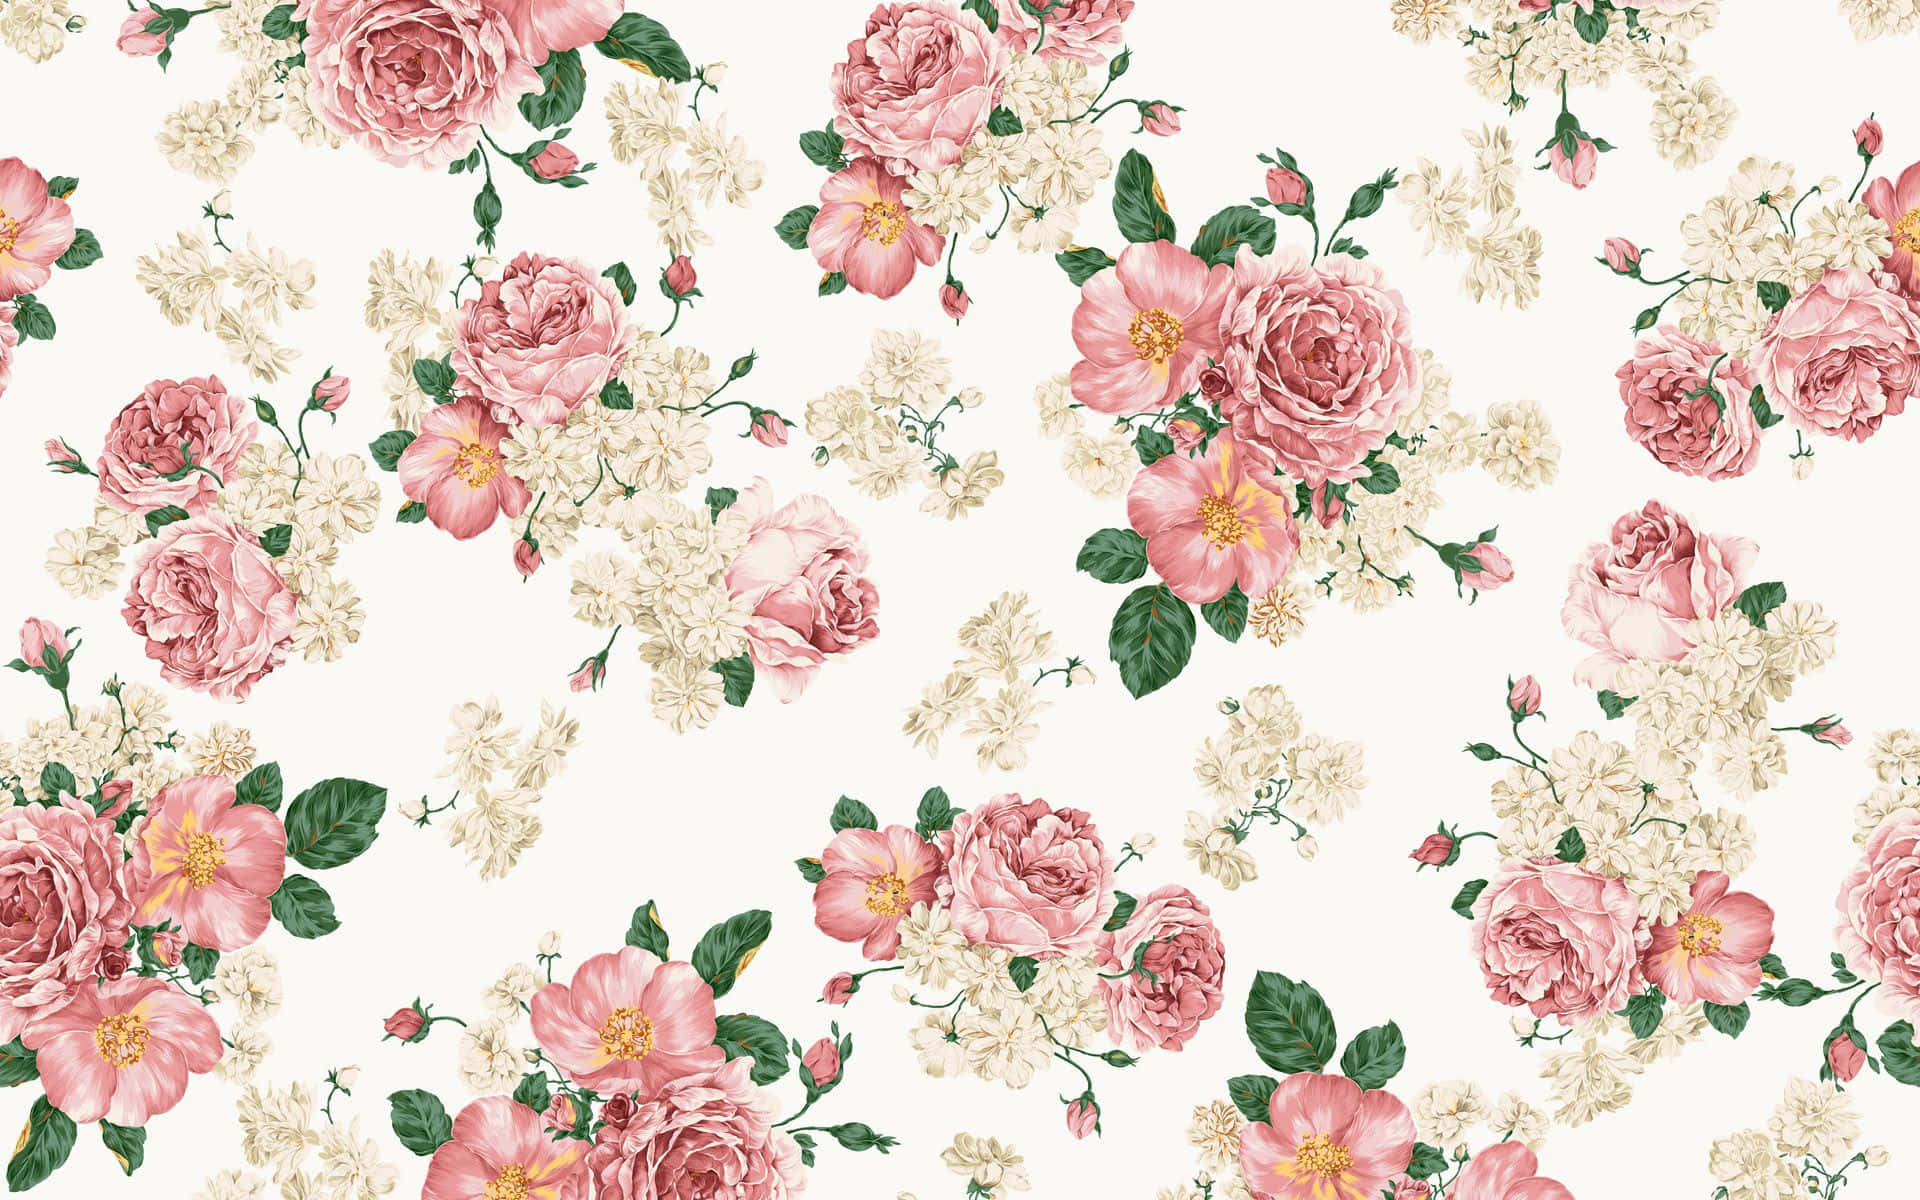 Fondode Pantalla Floral En Tonos Pastel Rosa Y Lindo. Fondo de pantalla